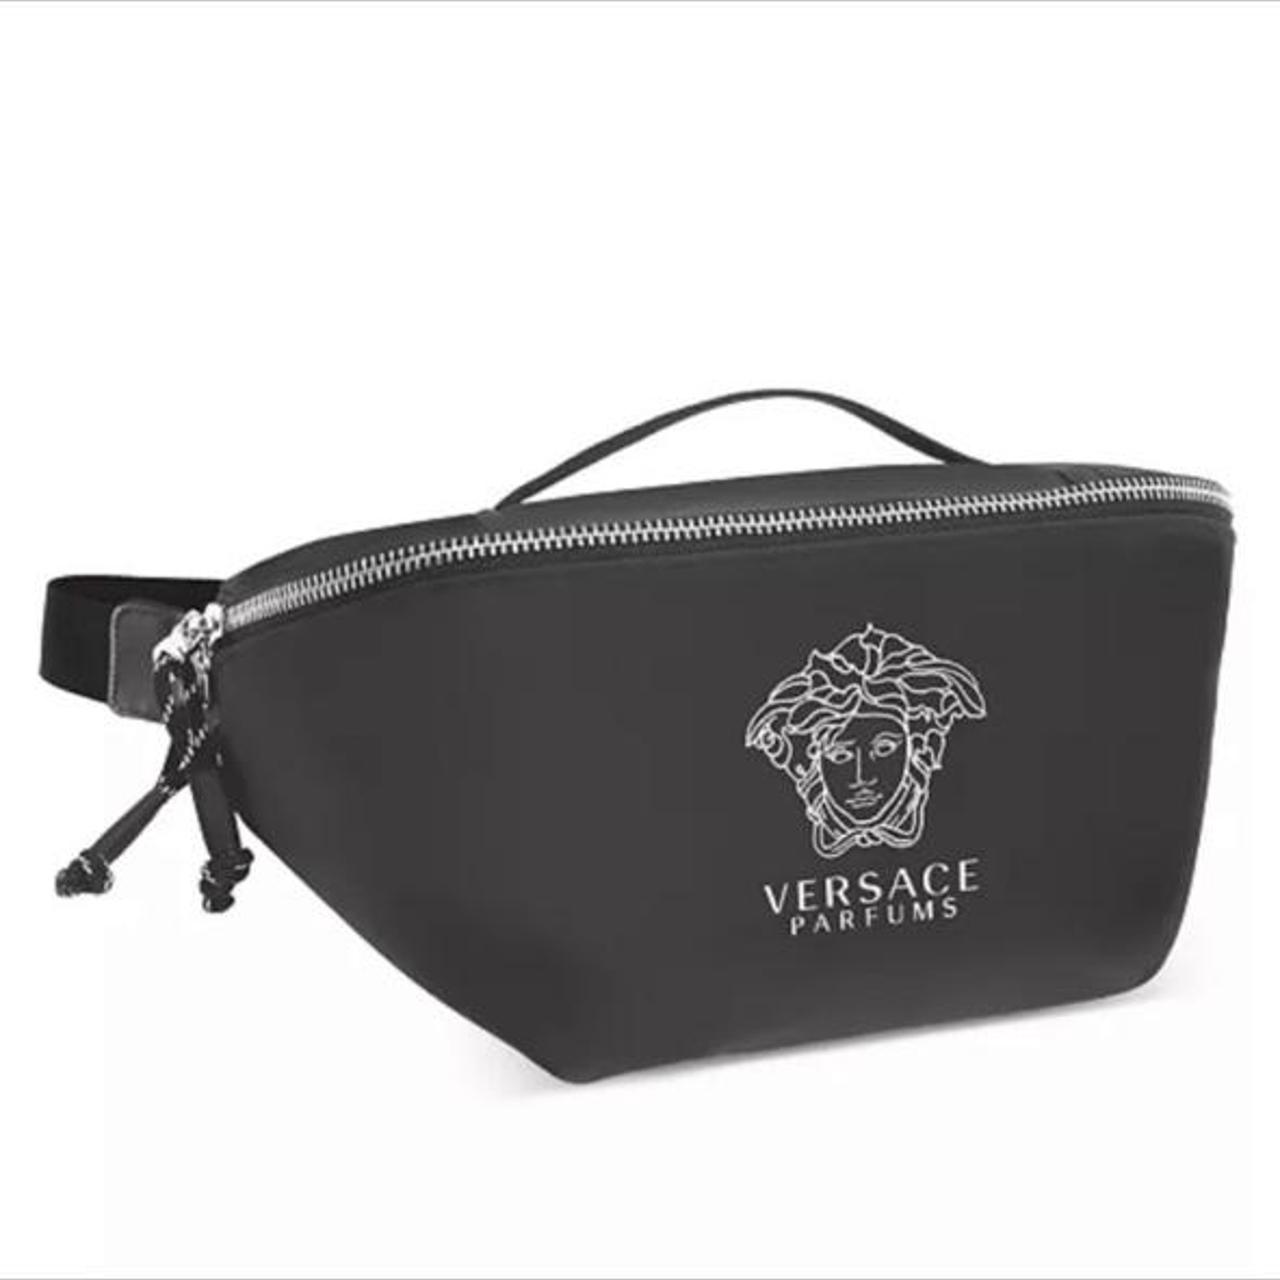 Versace men’s belt bag Brand new Made exclusively... - Depop